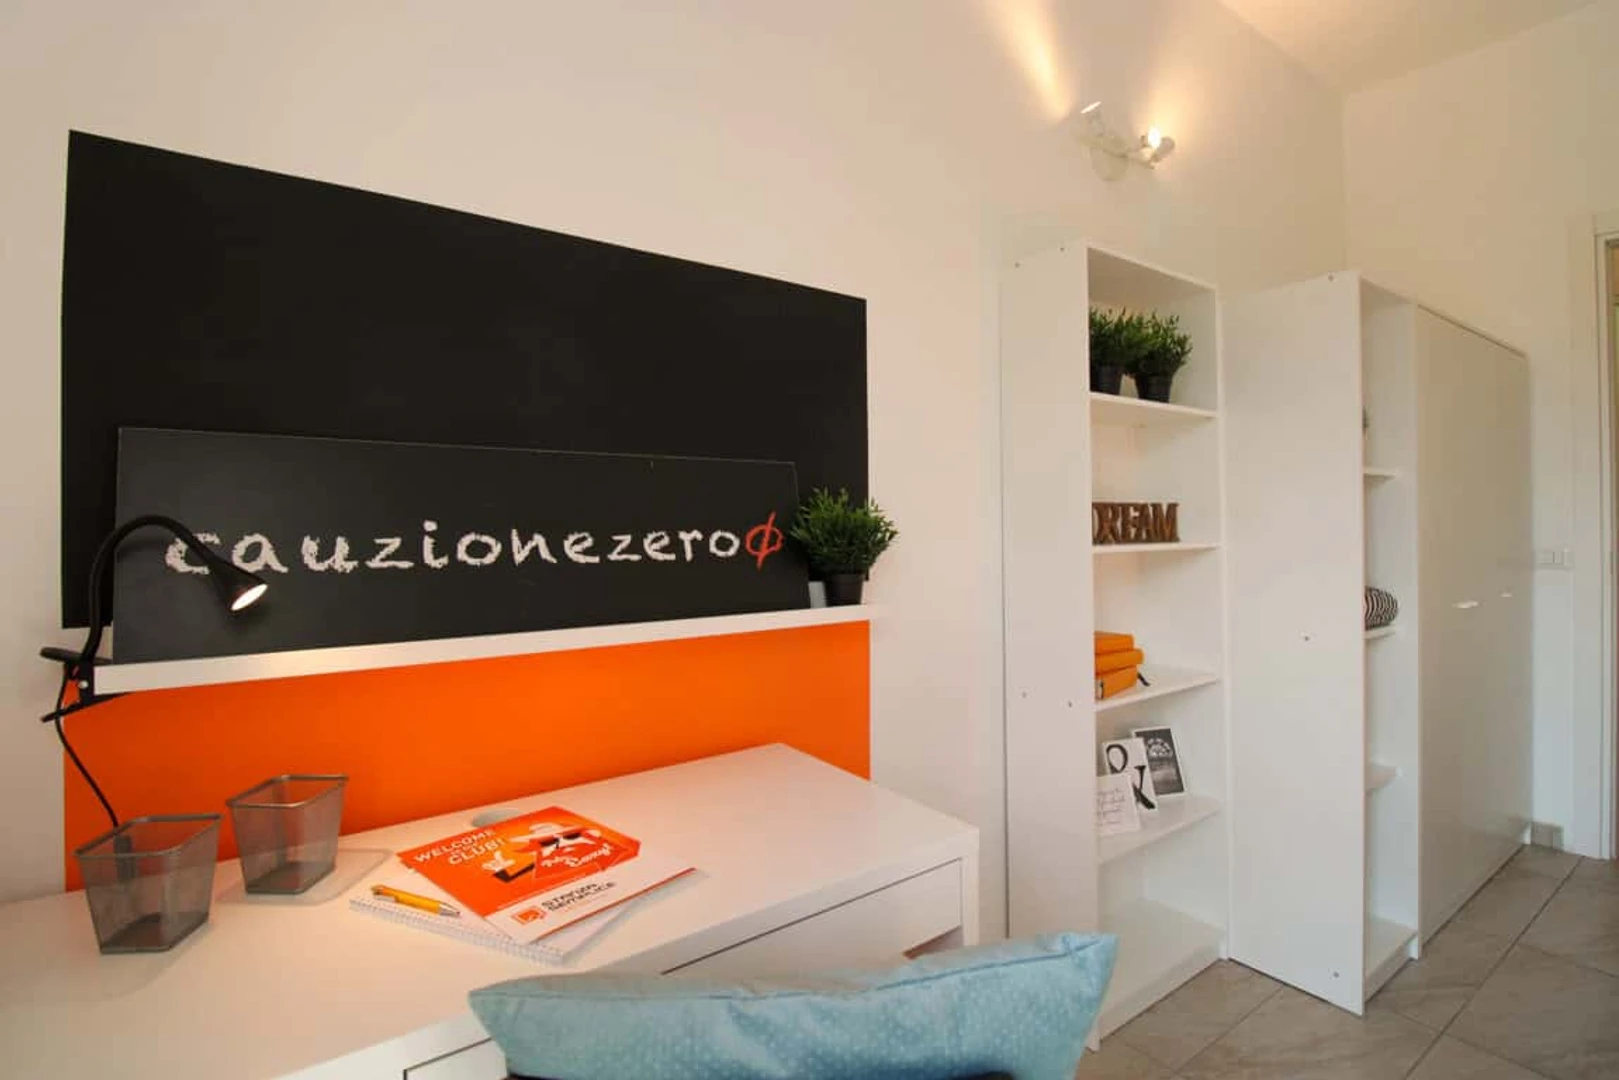 Alquiler de habitación en piso compartido en Pavia